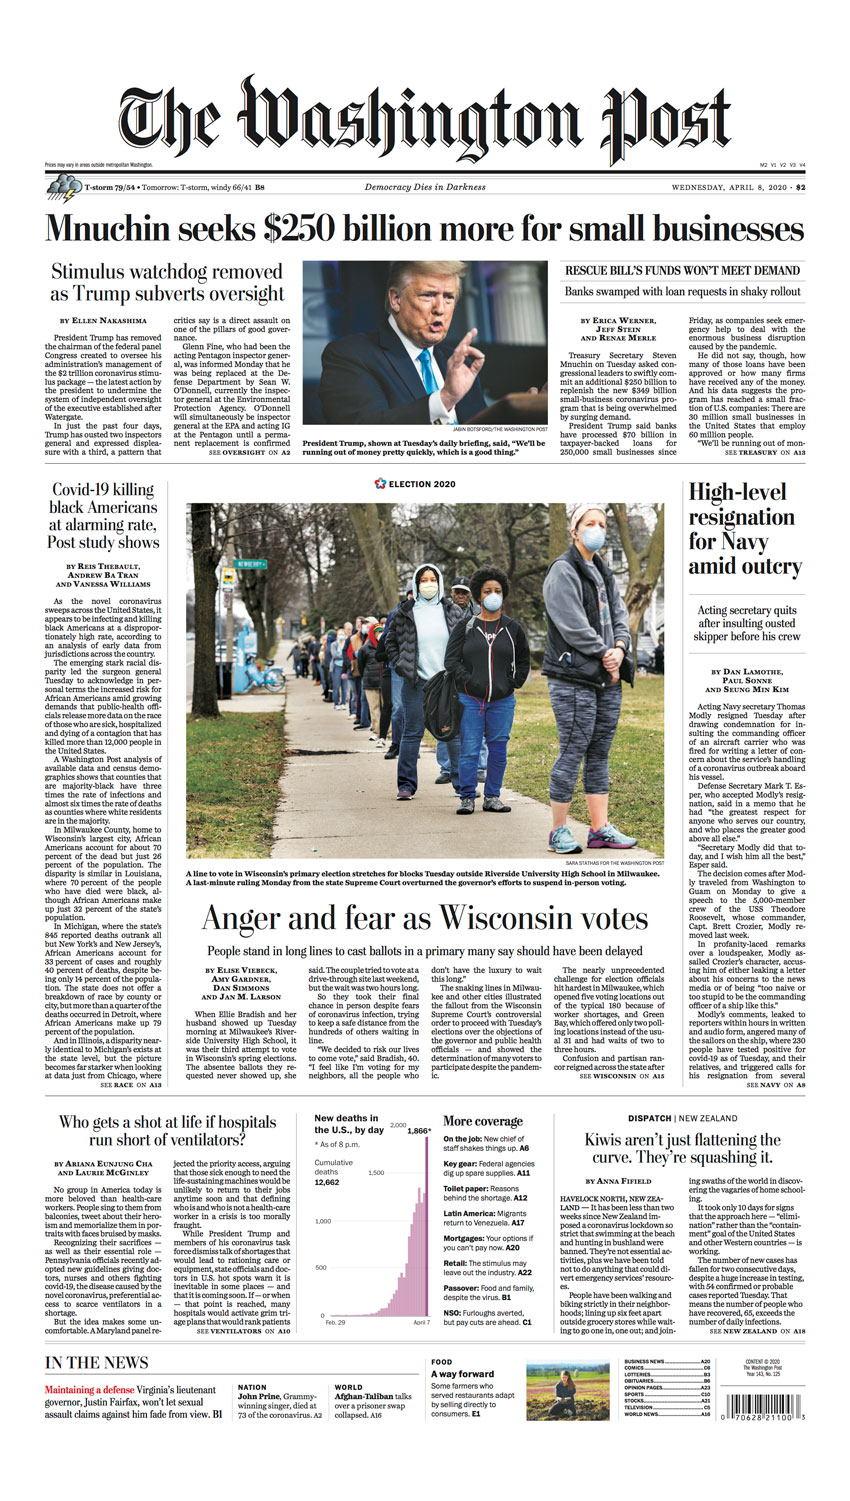 Sara Stathas Washington Post front page